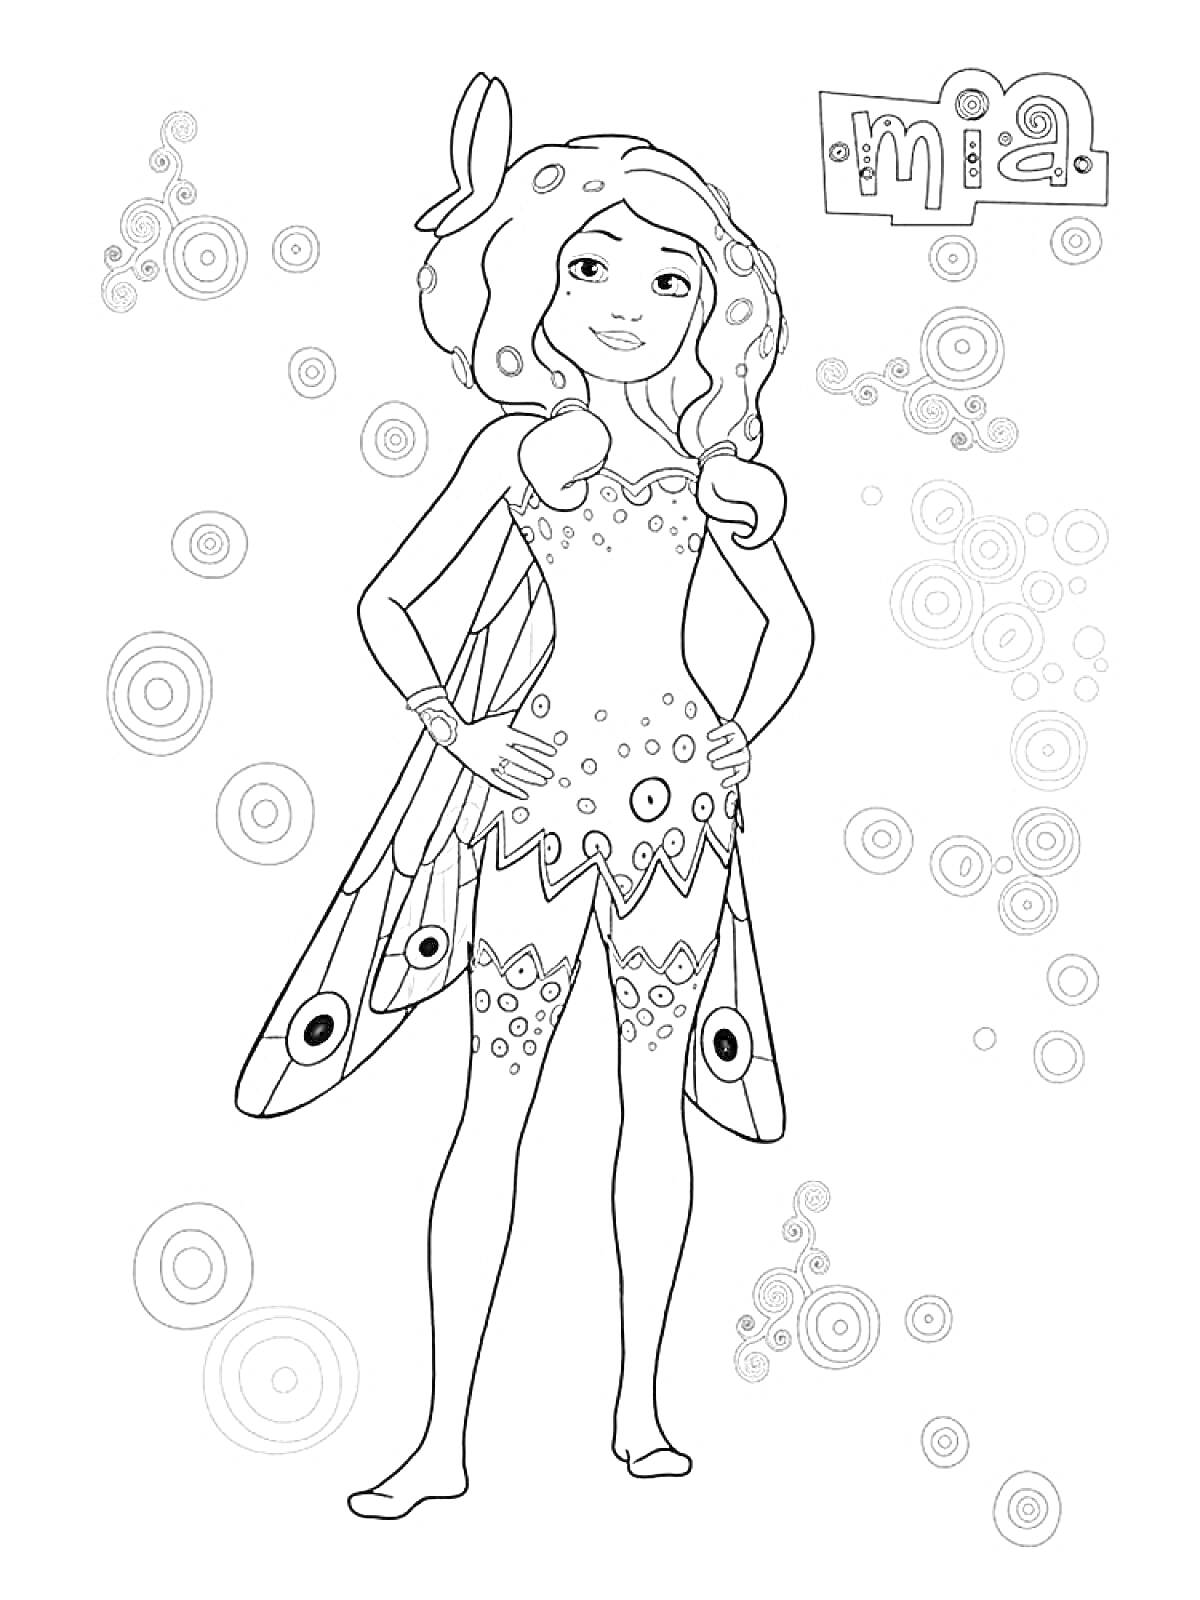 Раскраска Девочка-фея с крыльями в окружении круглых узоров и надписью 